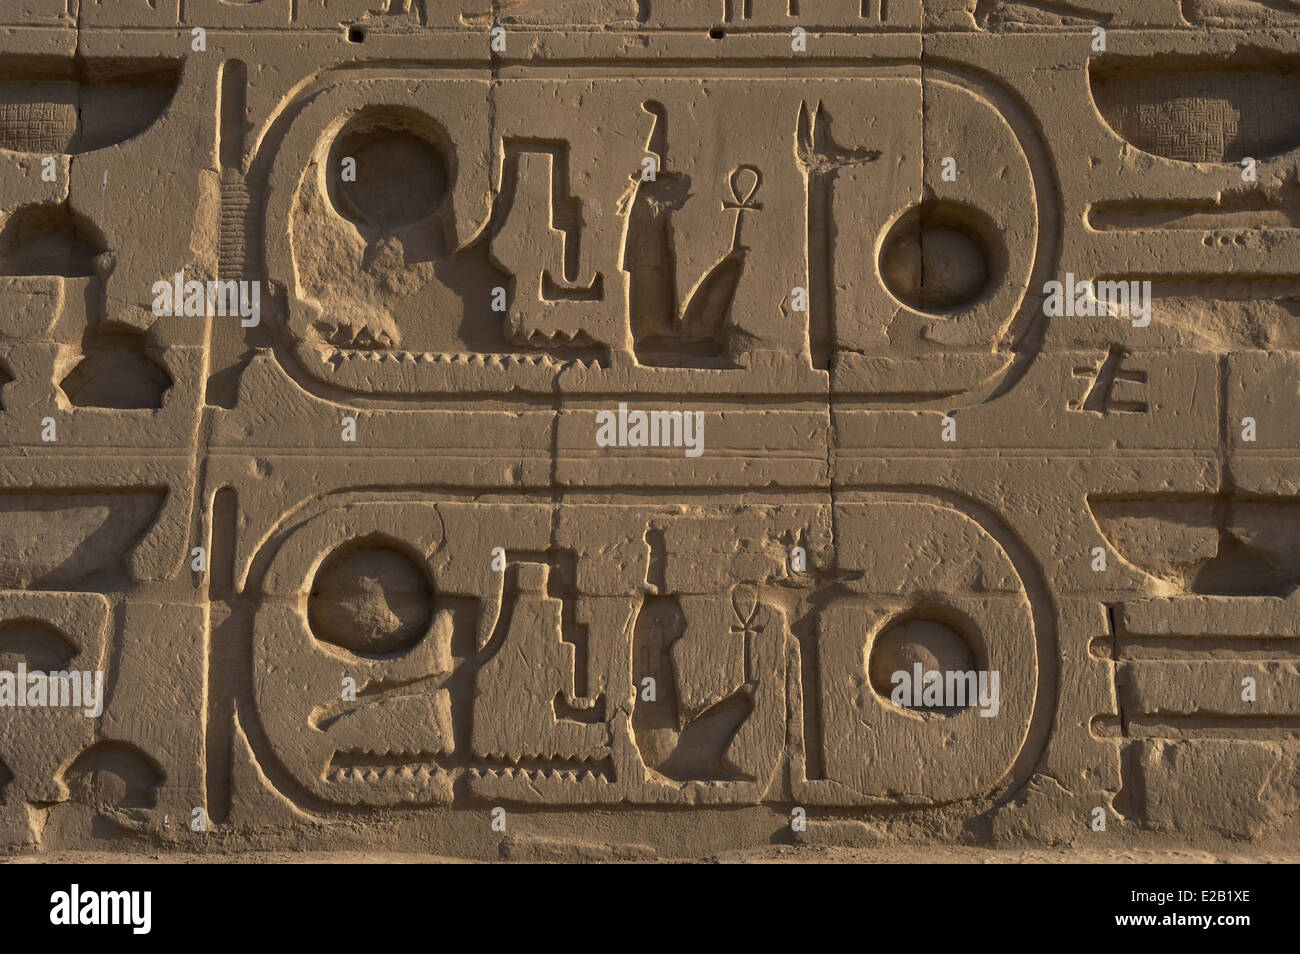 El arte egipcio complejo del templo de Karnak. La escritura jeroglífica. Protocolo real de Ramsés II. Foto de stock